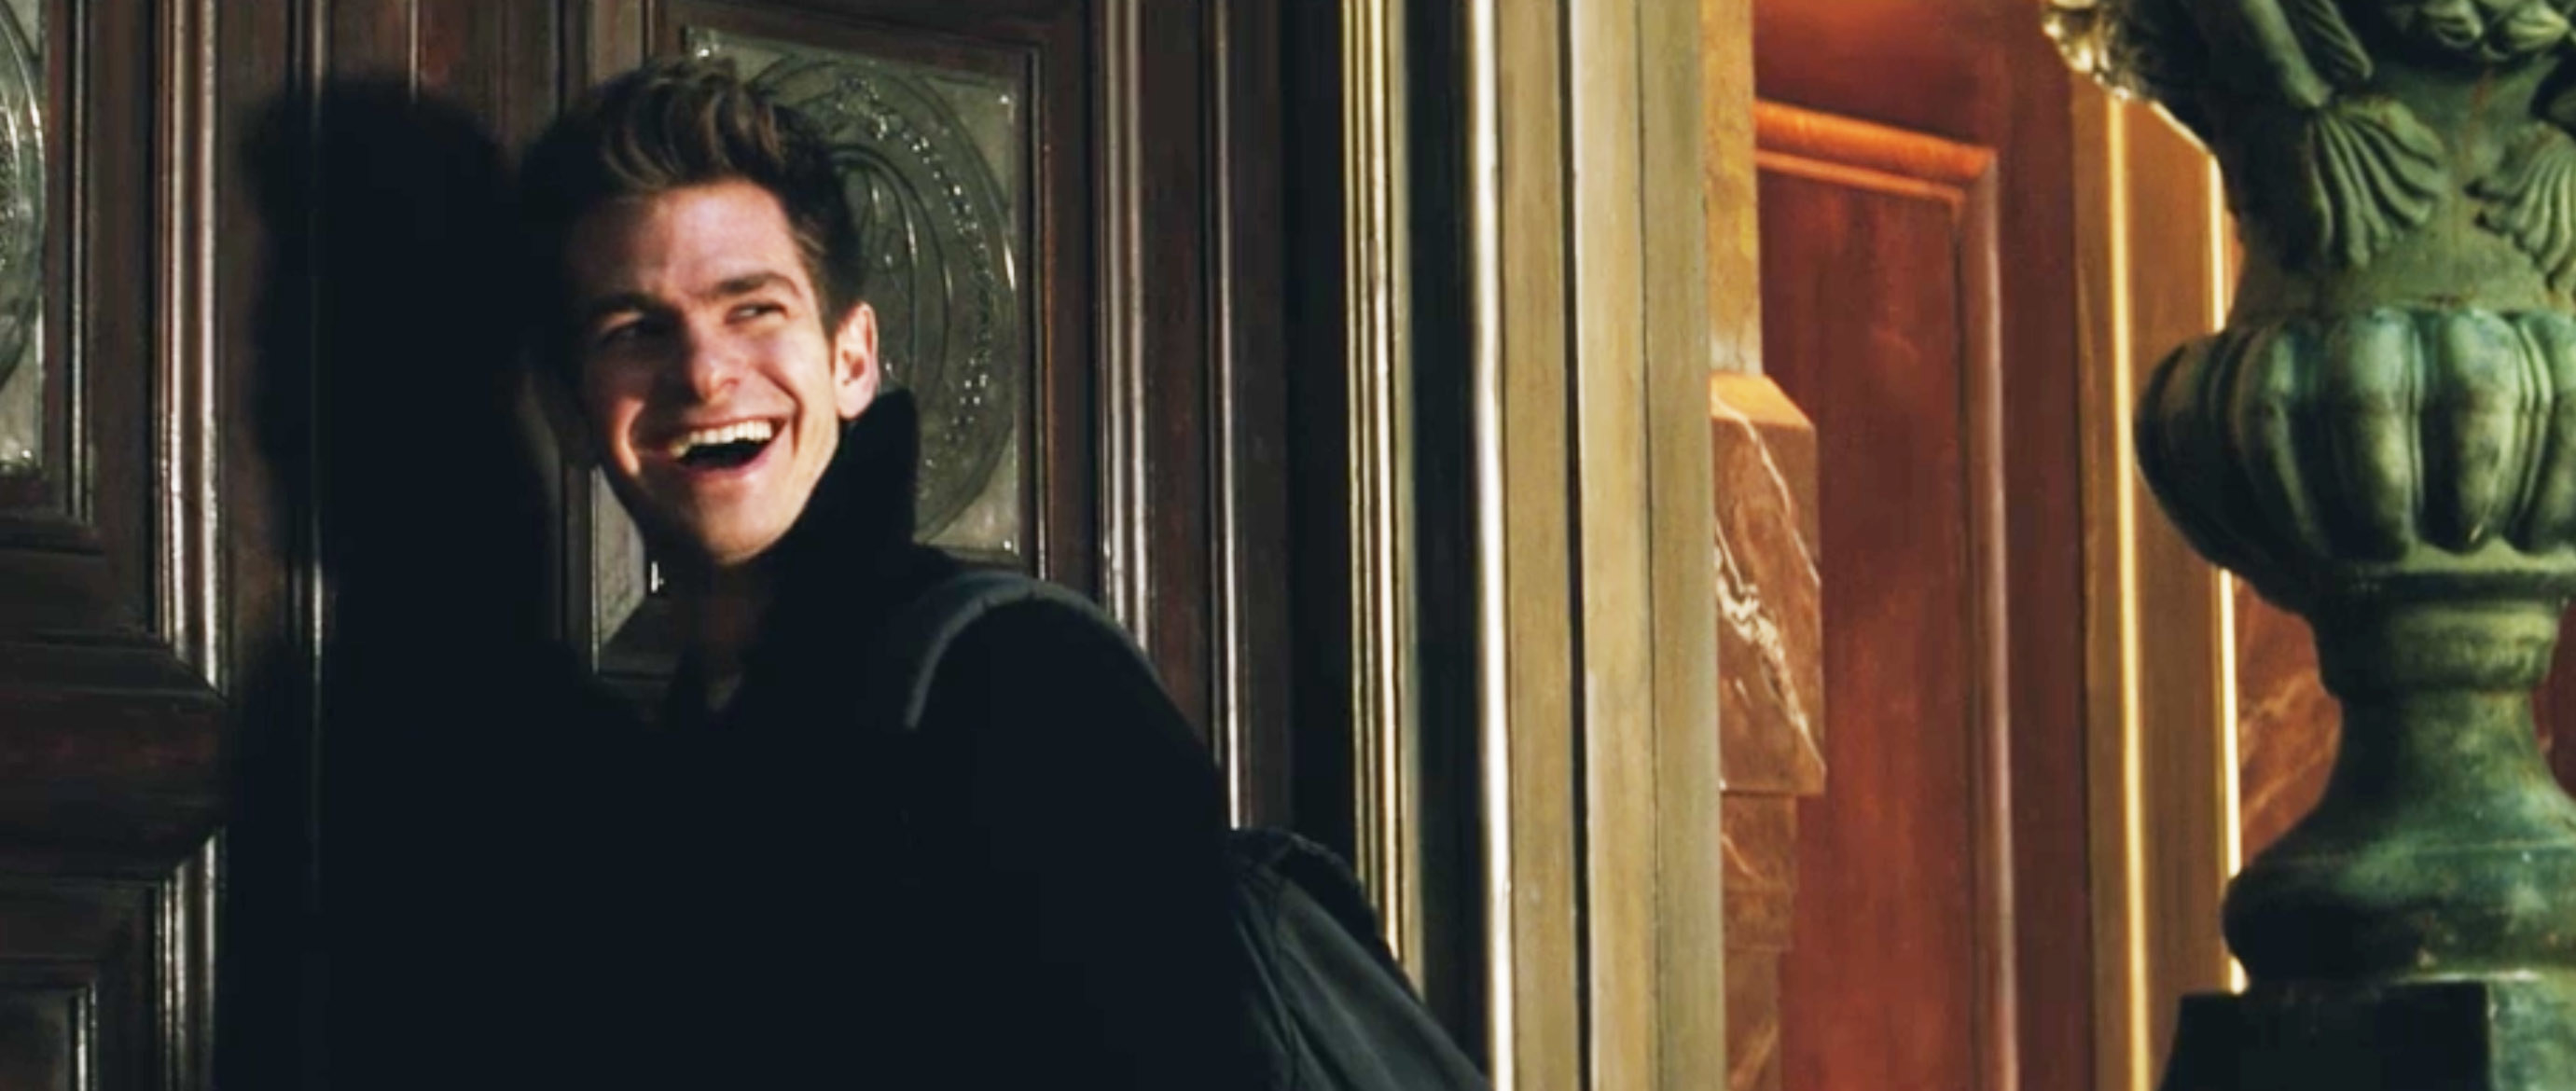 安德鲁微笑着他站在门的前面一个场景从蜘蛛侠